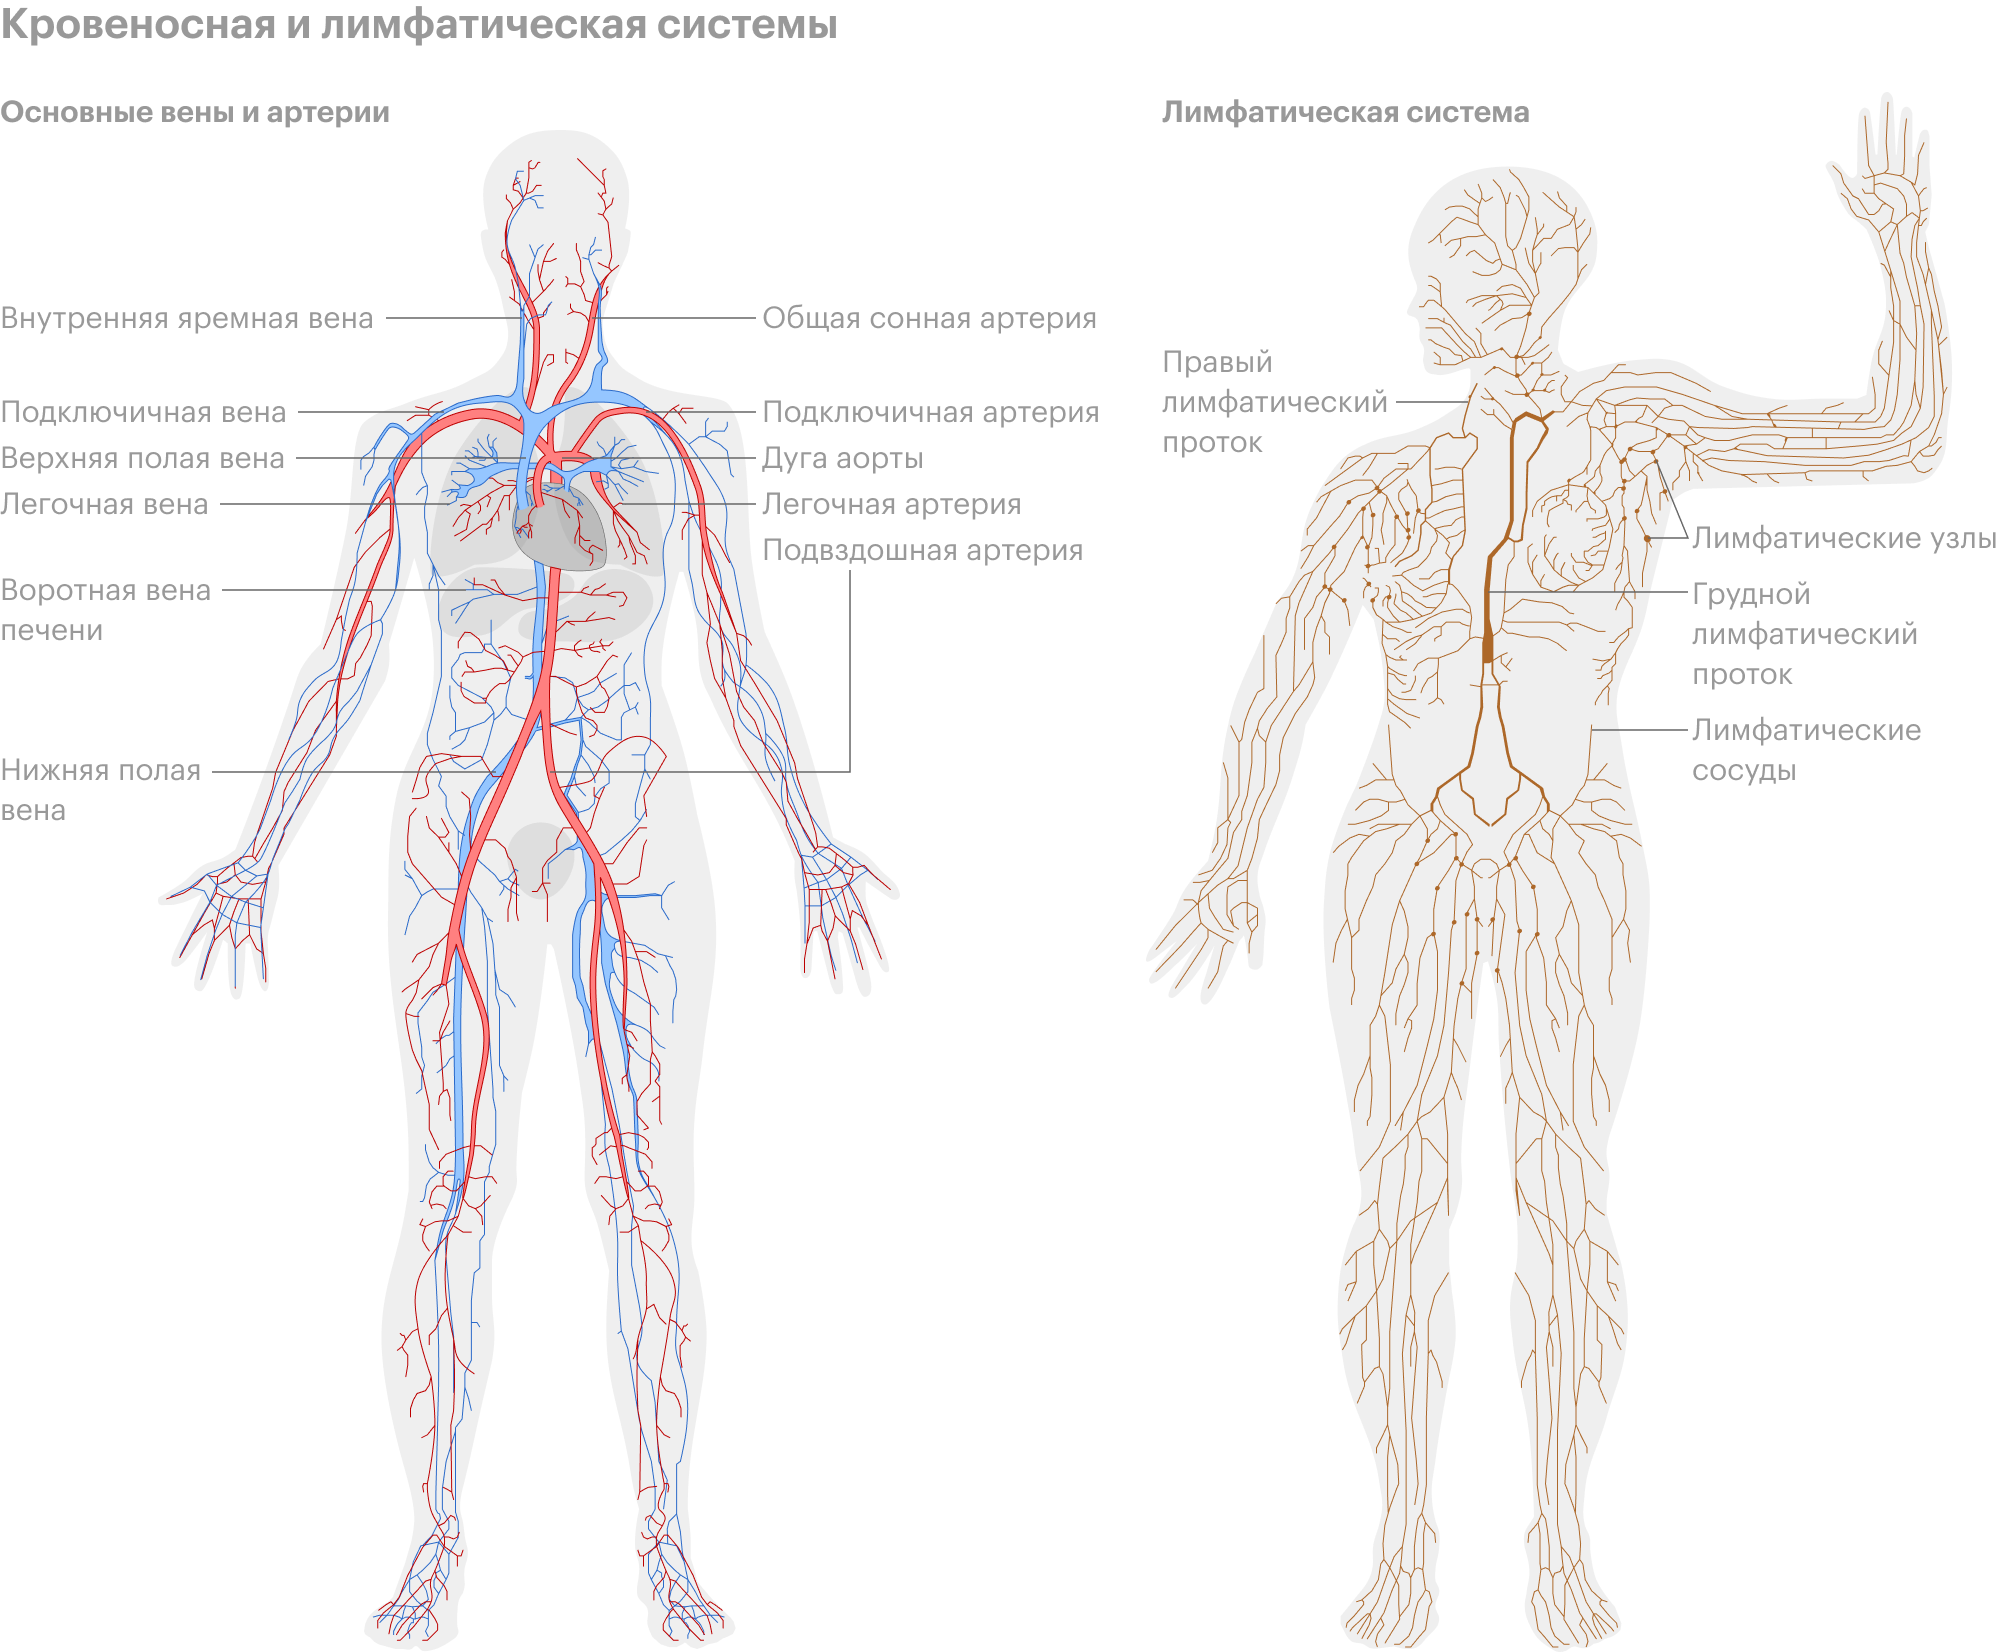 Лимфатическая система человека схема. Кровеносная и лимфатическая система человека схема. Лимфосистема человека схема движения лимфы. Лимфатическая система человека рисунок. Лимфосистема схема